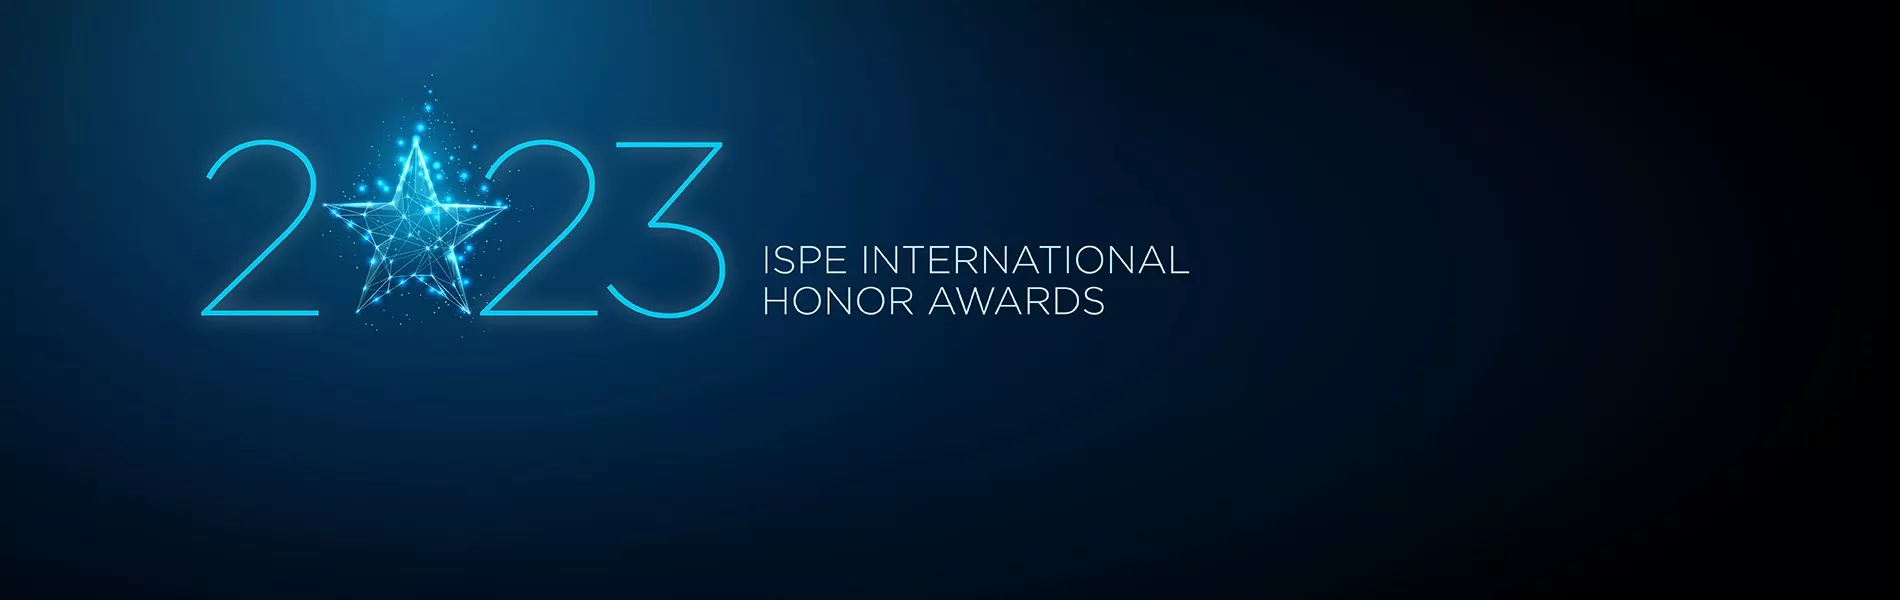 ISPE International Honor Awards Banner